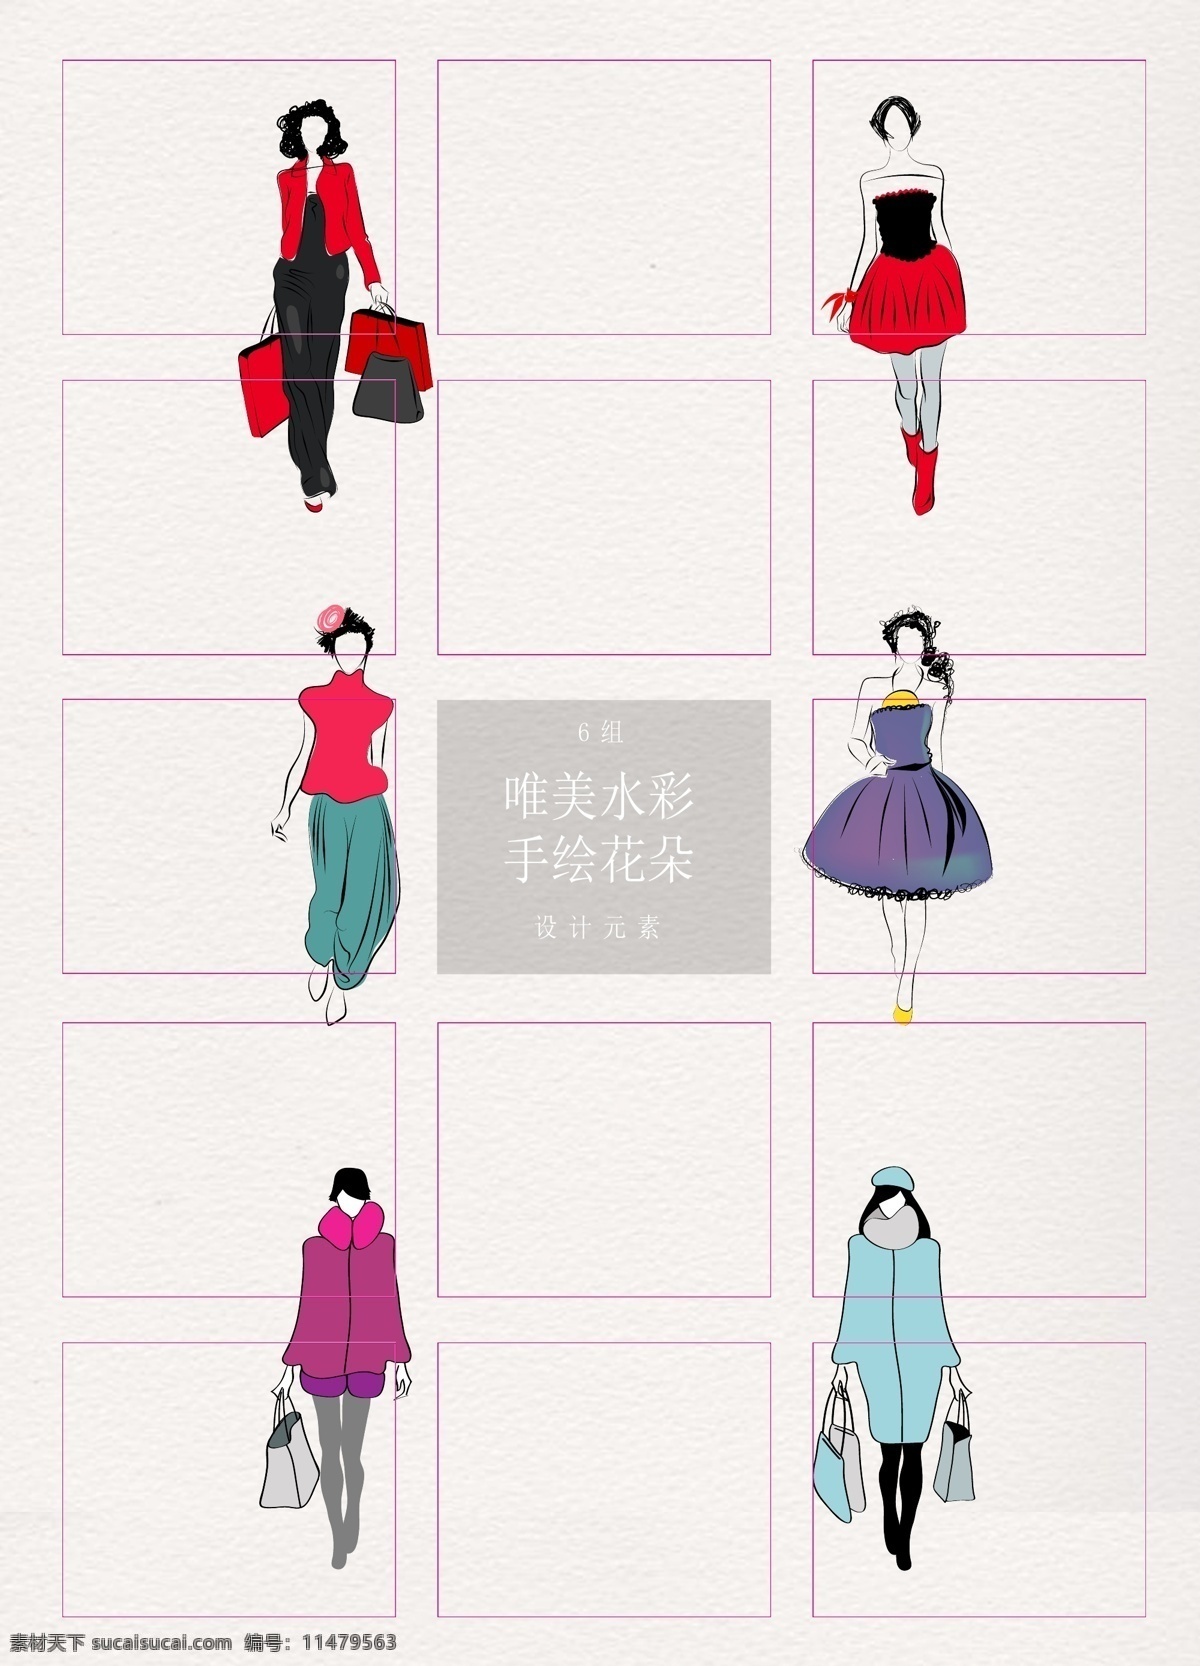 摩登 服装 模特 卡通 中国风 裙子 女性 服装设计 手绘 服装模特 走秀 时装周